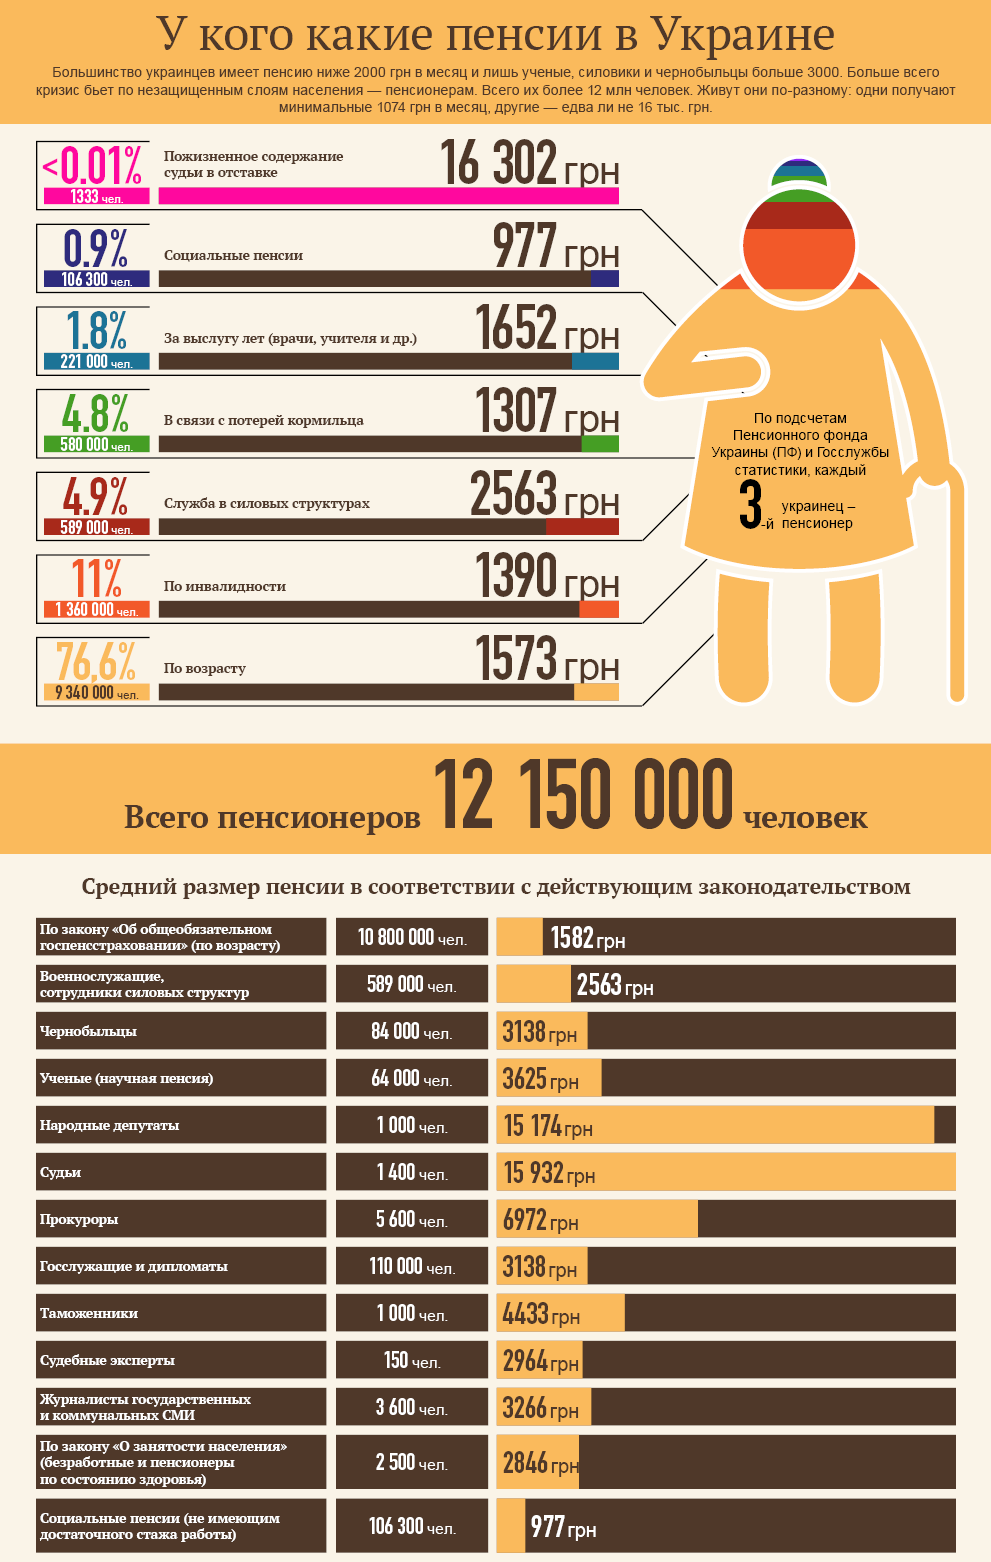 Размер пенсии в Украине